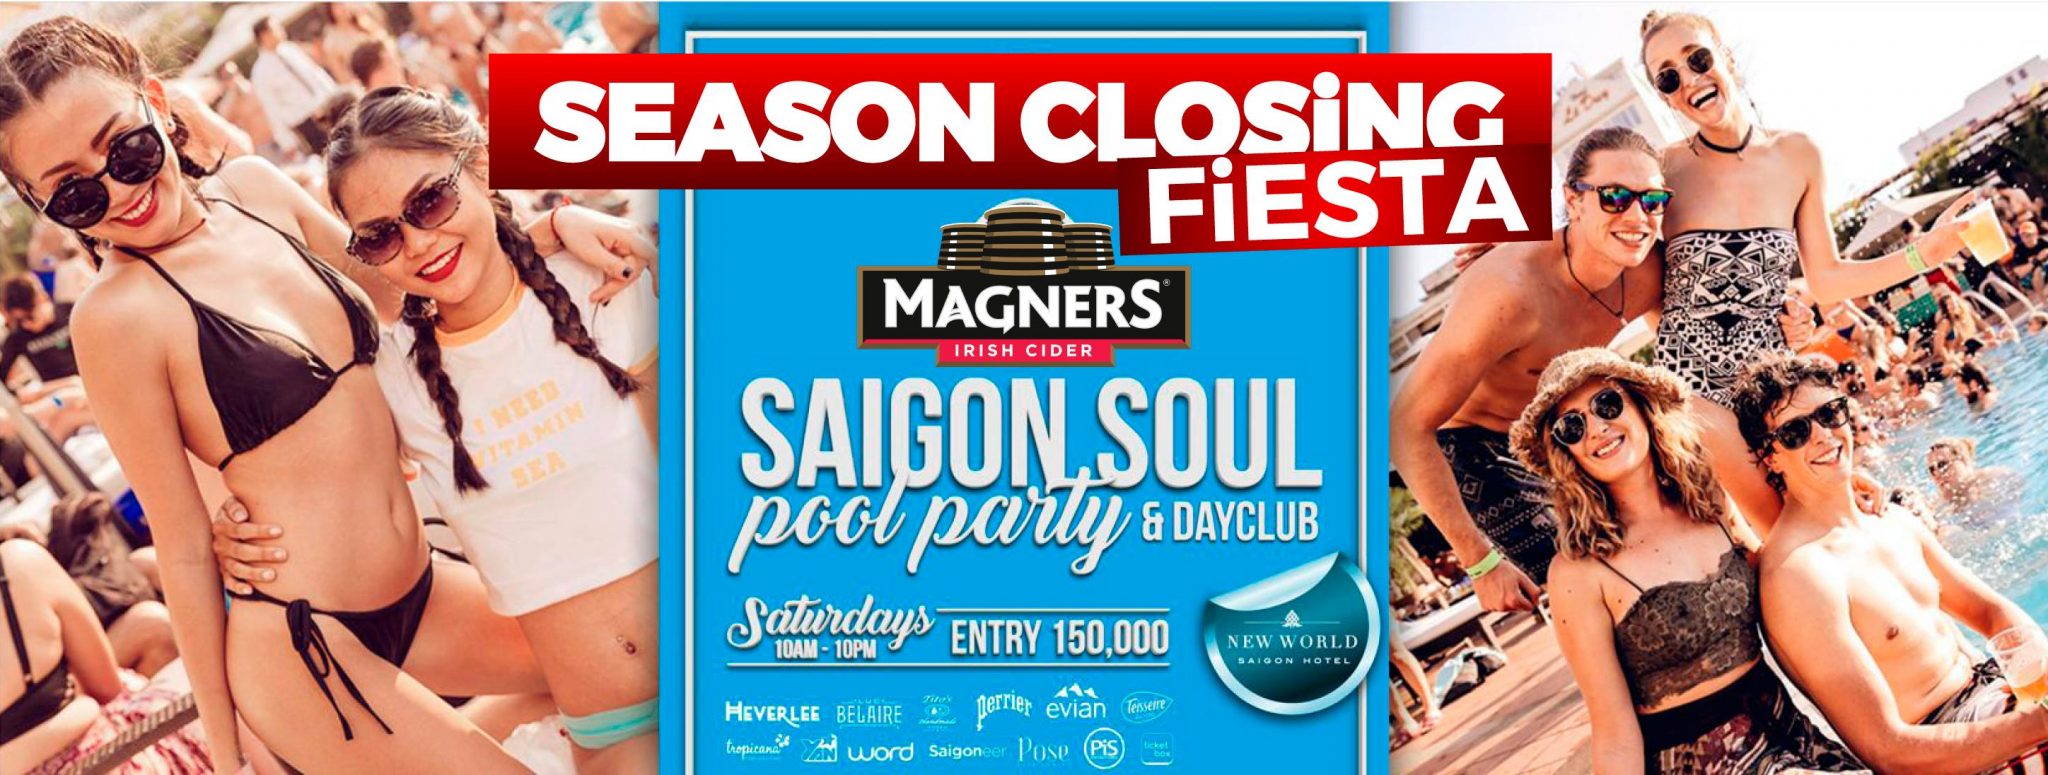 Saigon Soul Pool Party - Season Closing Fiesta